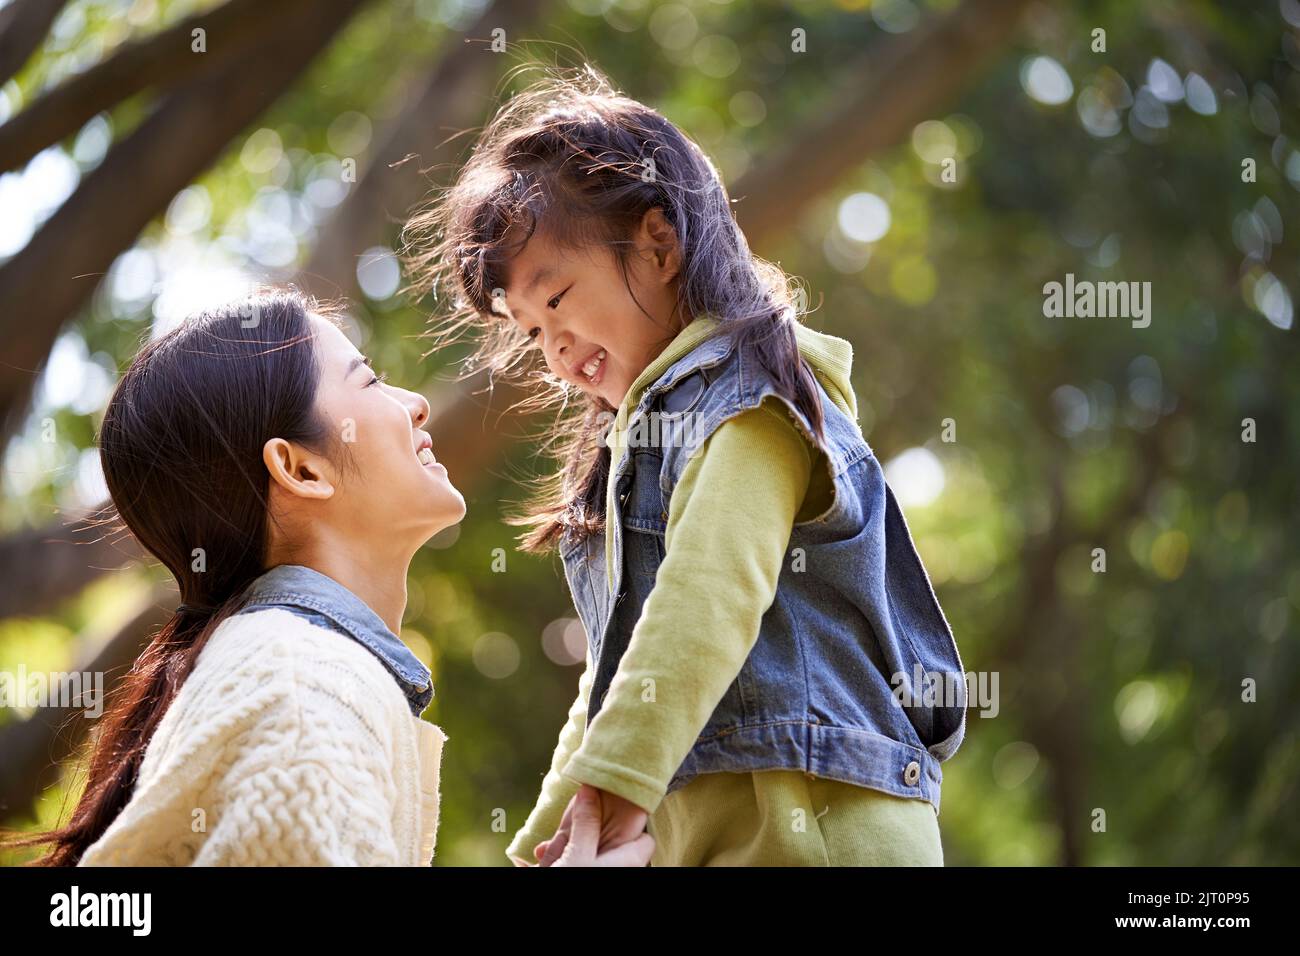 jeune mère asiatique assise sur l'herbe dans le parc ayant une conversation agréable avec la jolie fille Banque D'Images